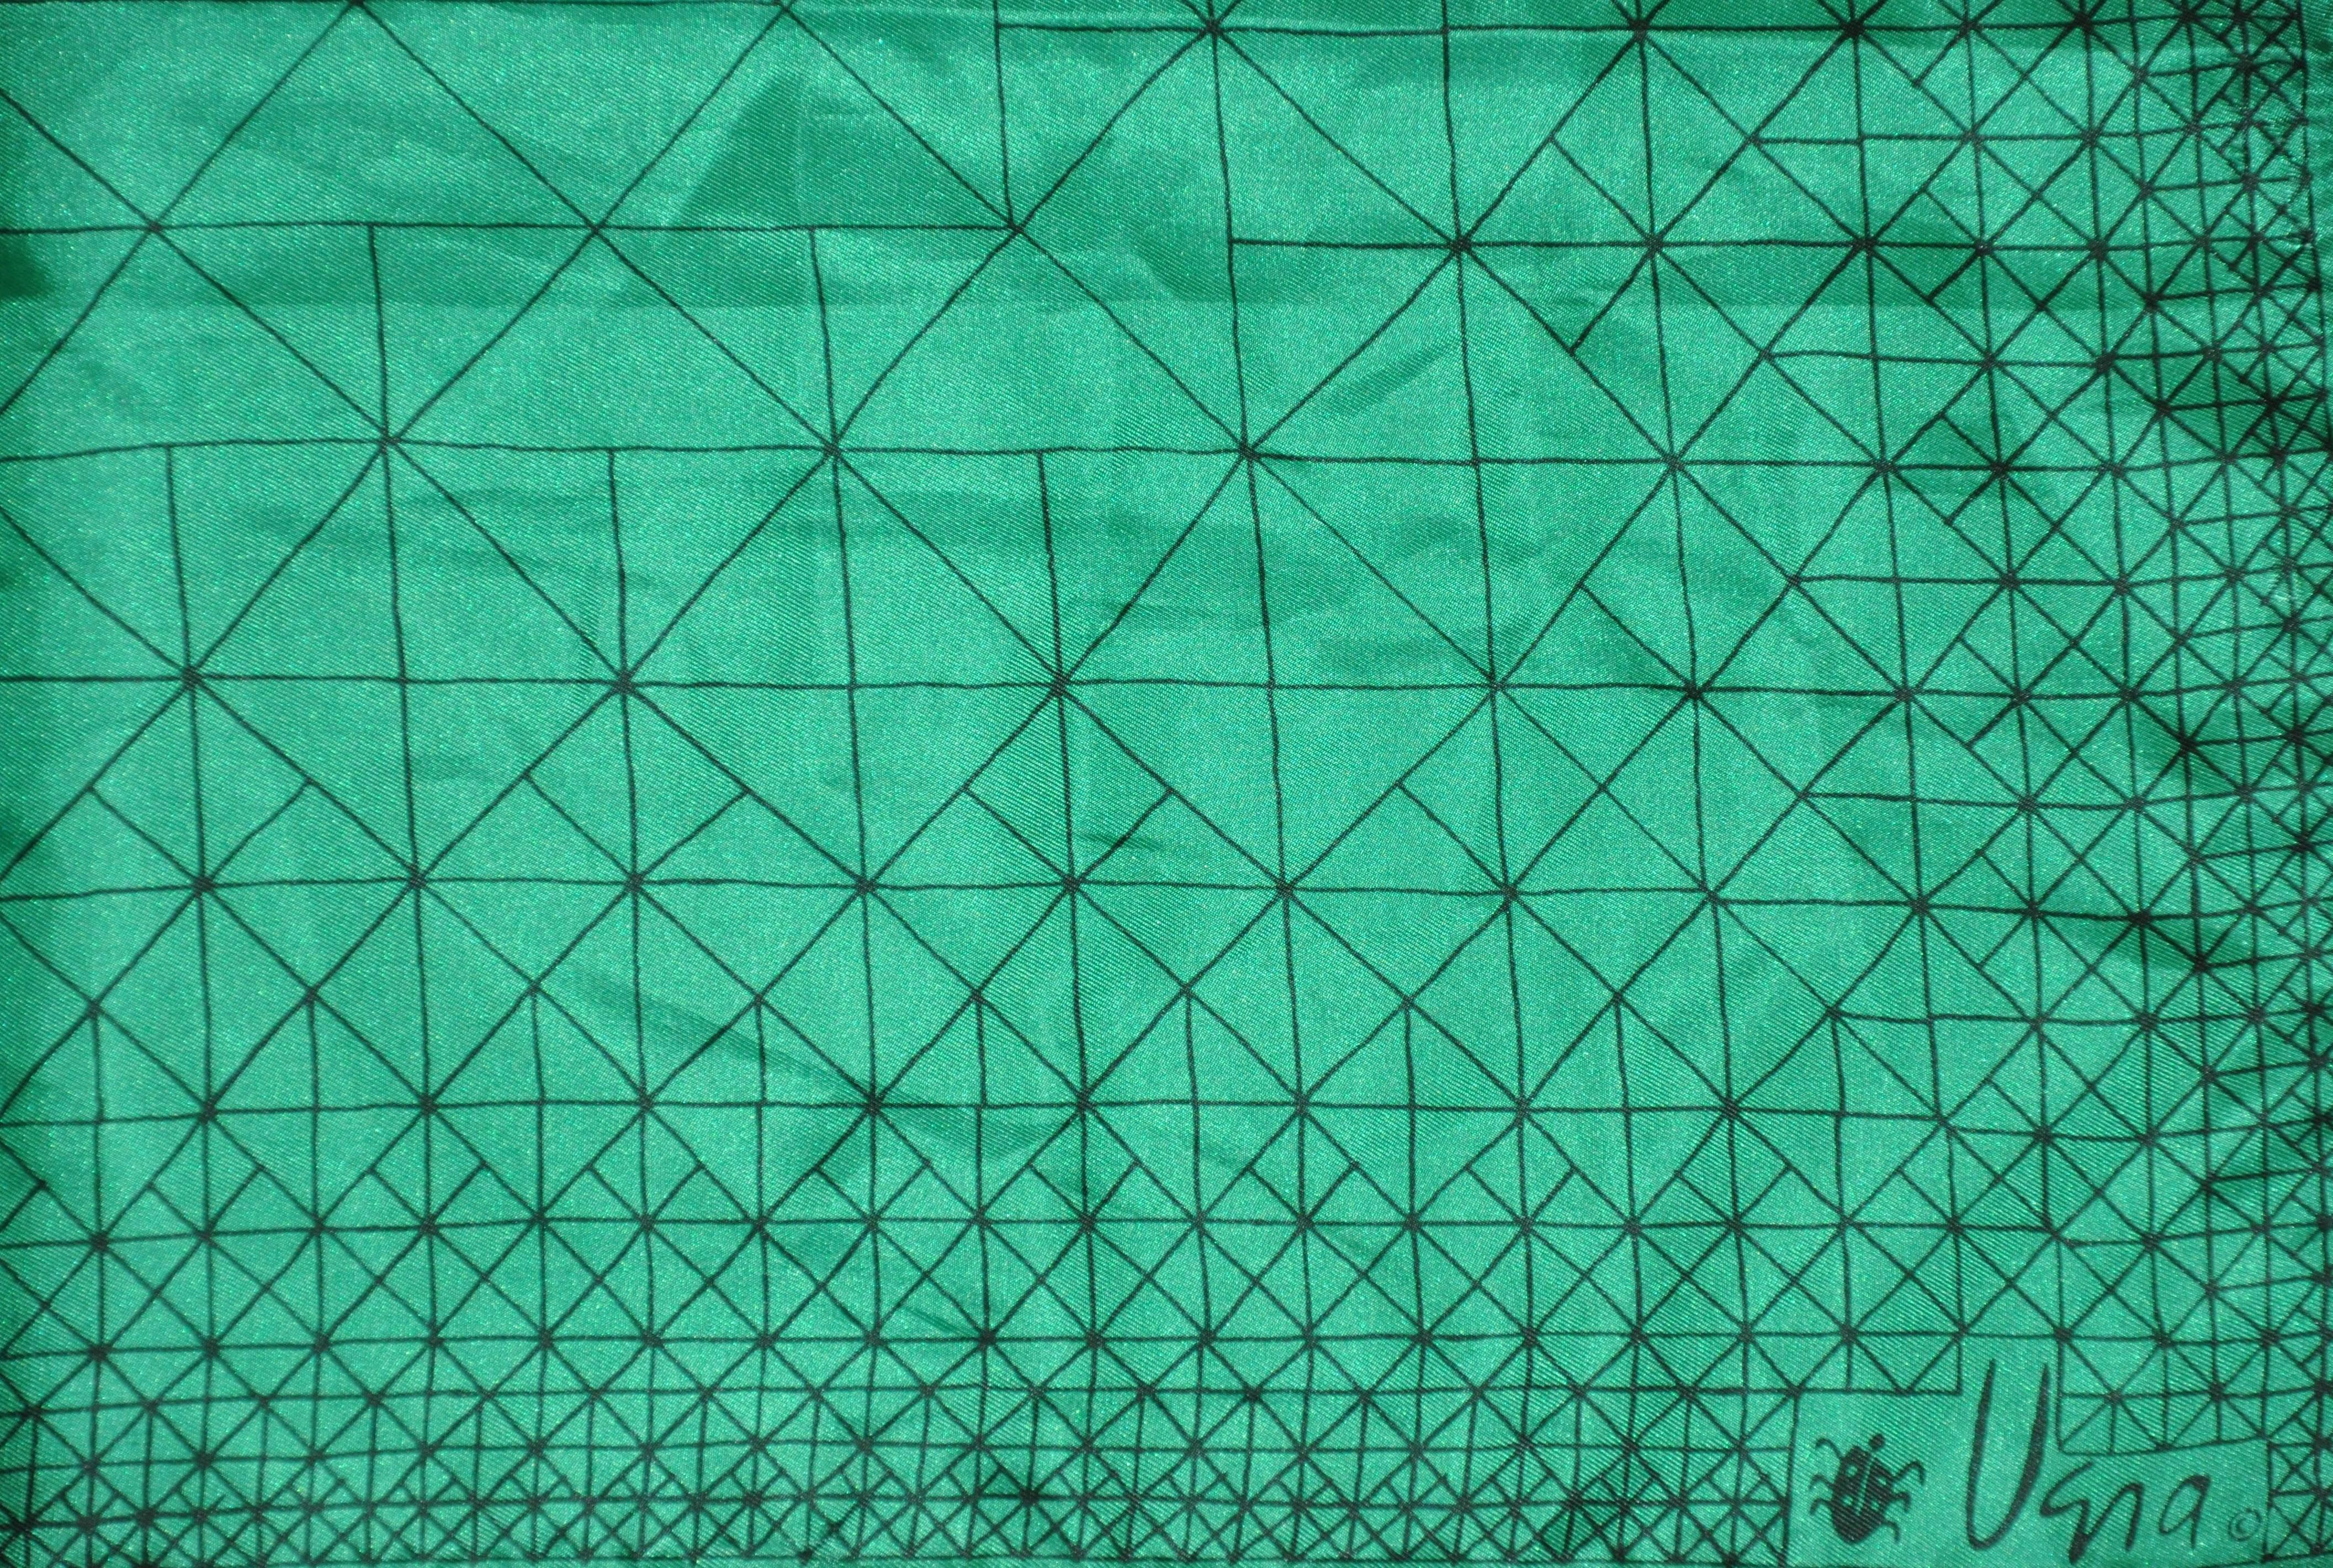        L'écharpe Vera vert émeraude avec des gravures noires tout au long de l'écharpe mesure 22 pouces par 22 pouces. Fabriqué au Japon en polyester.